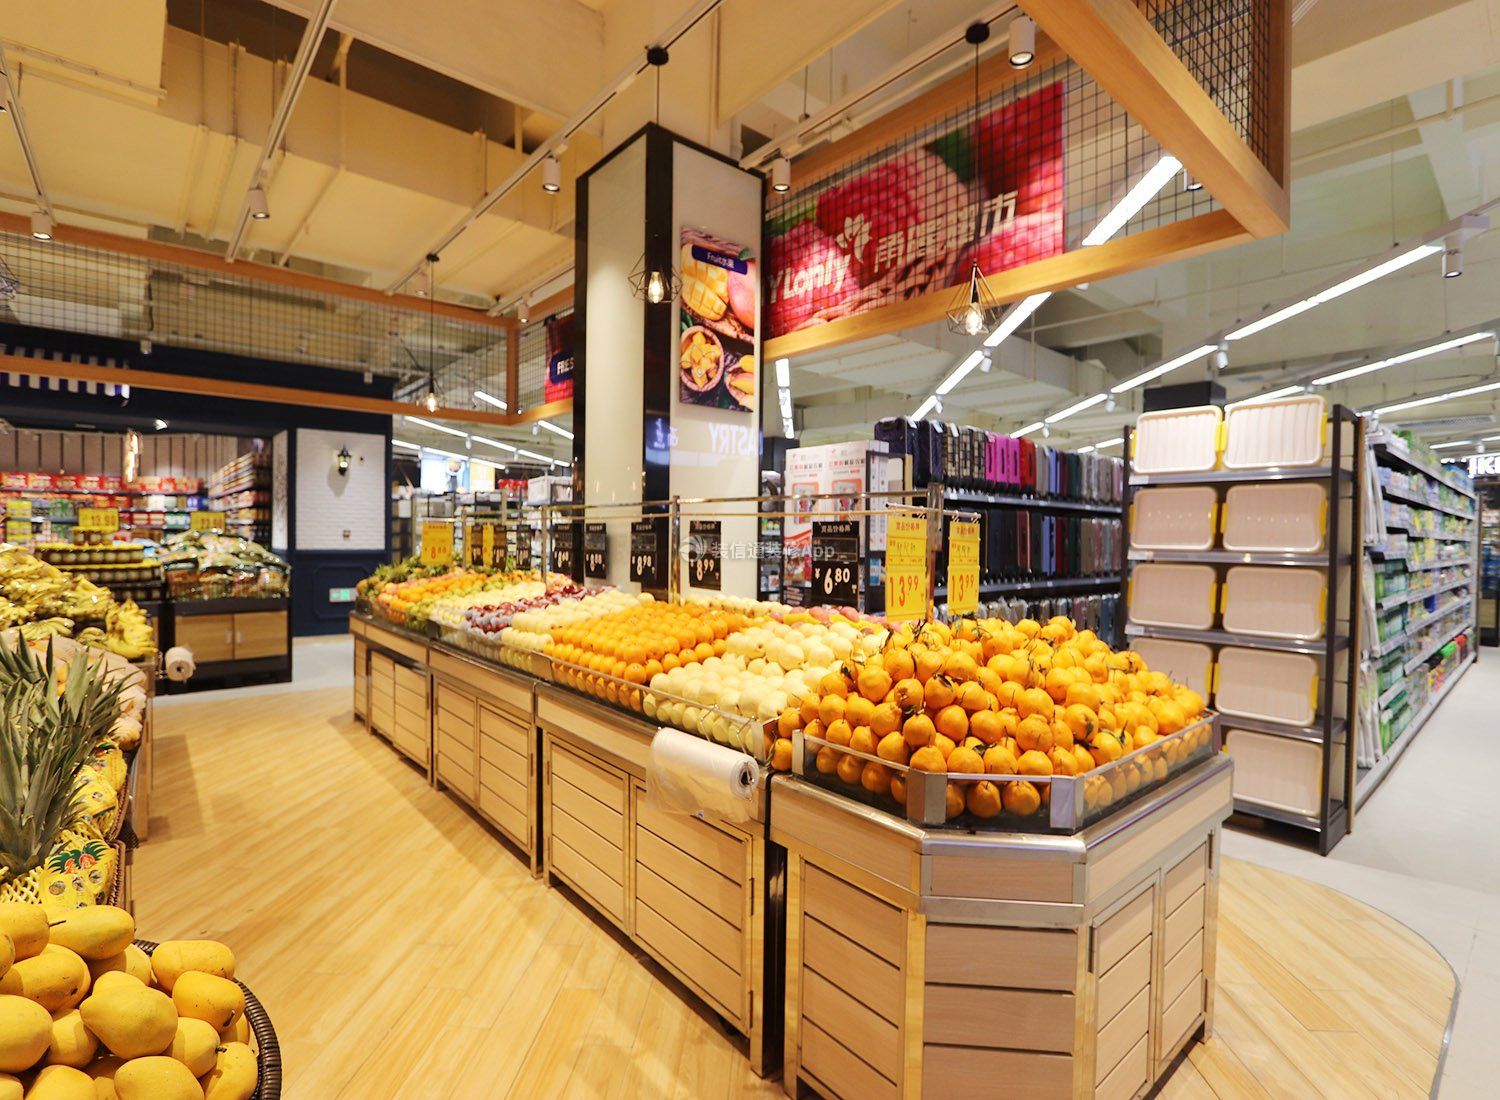 上海超市水果区装修设计图片